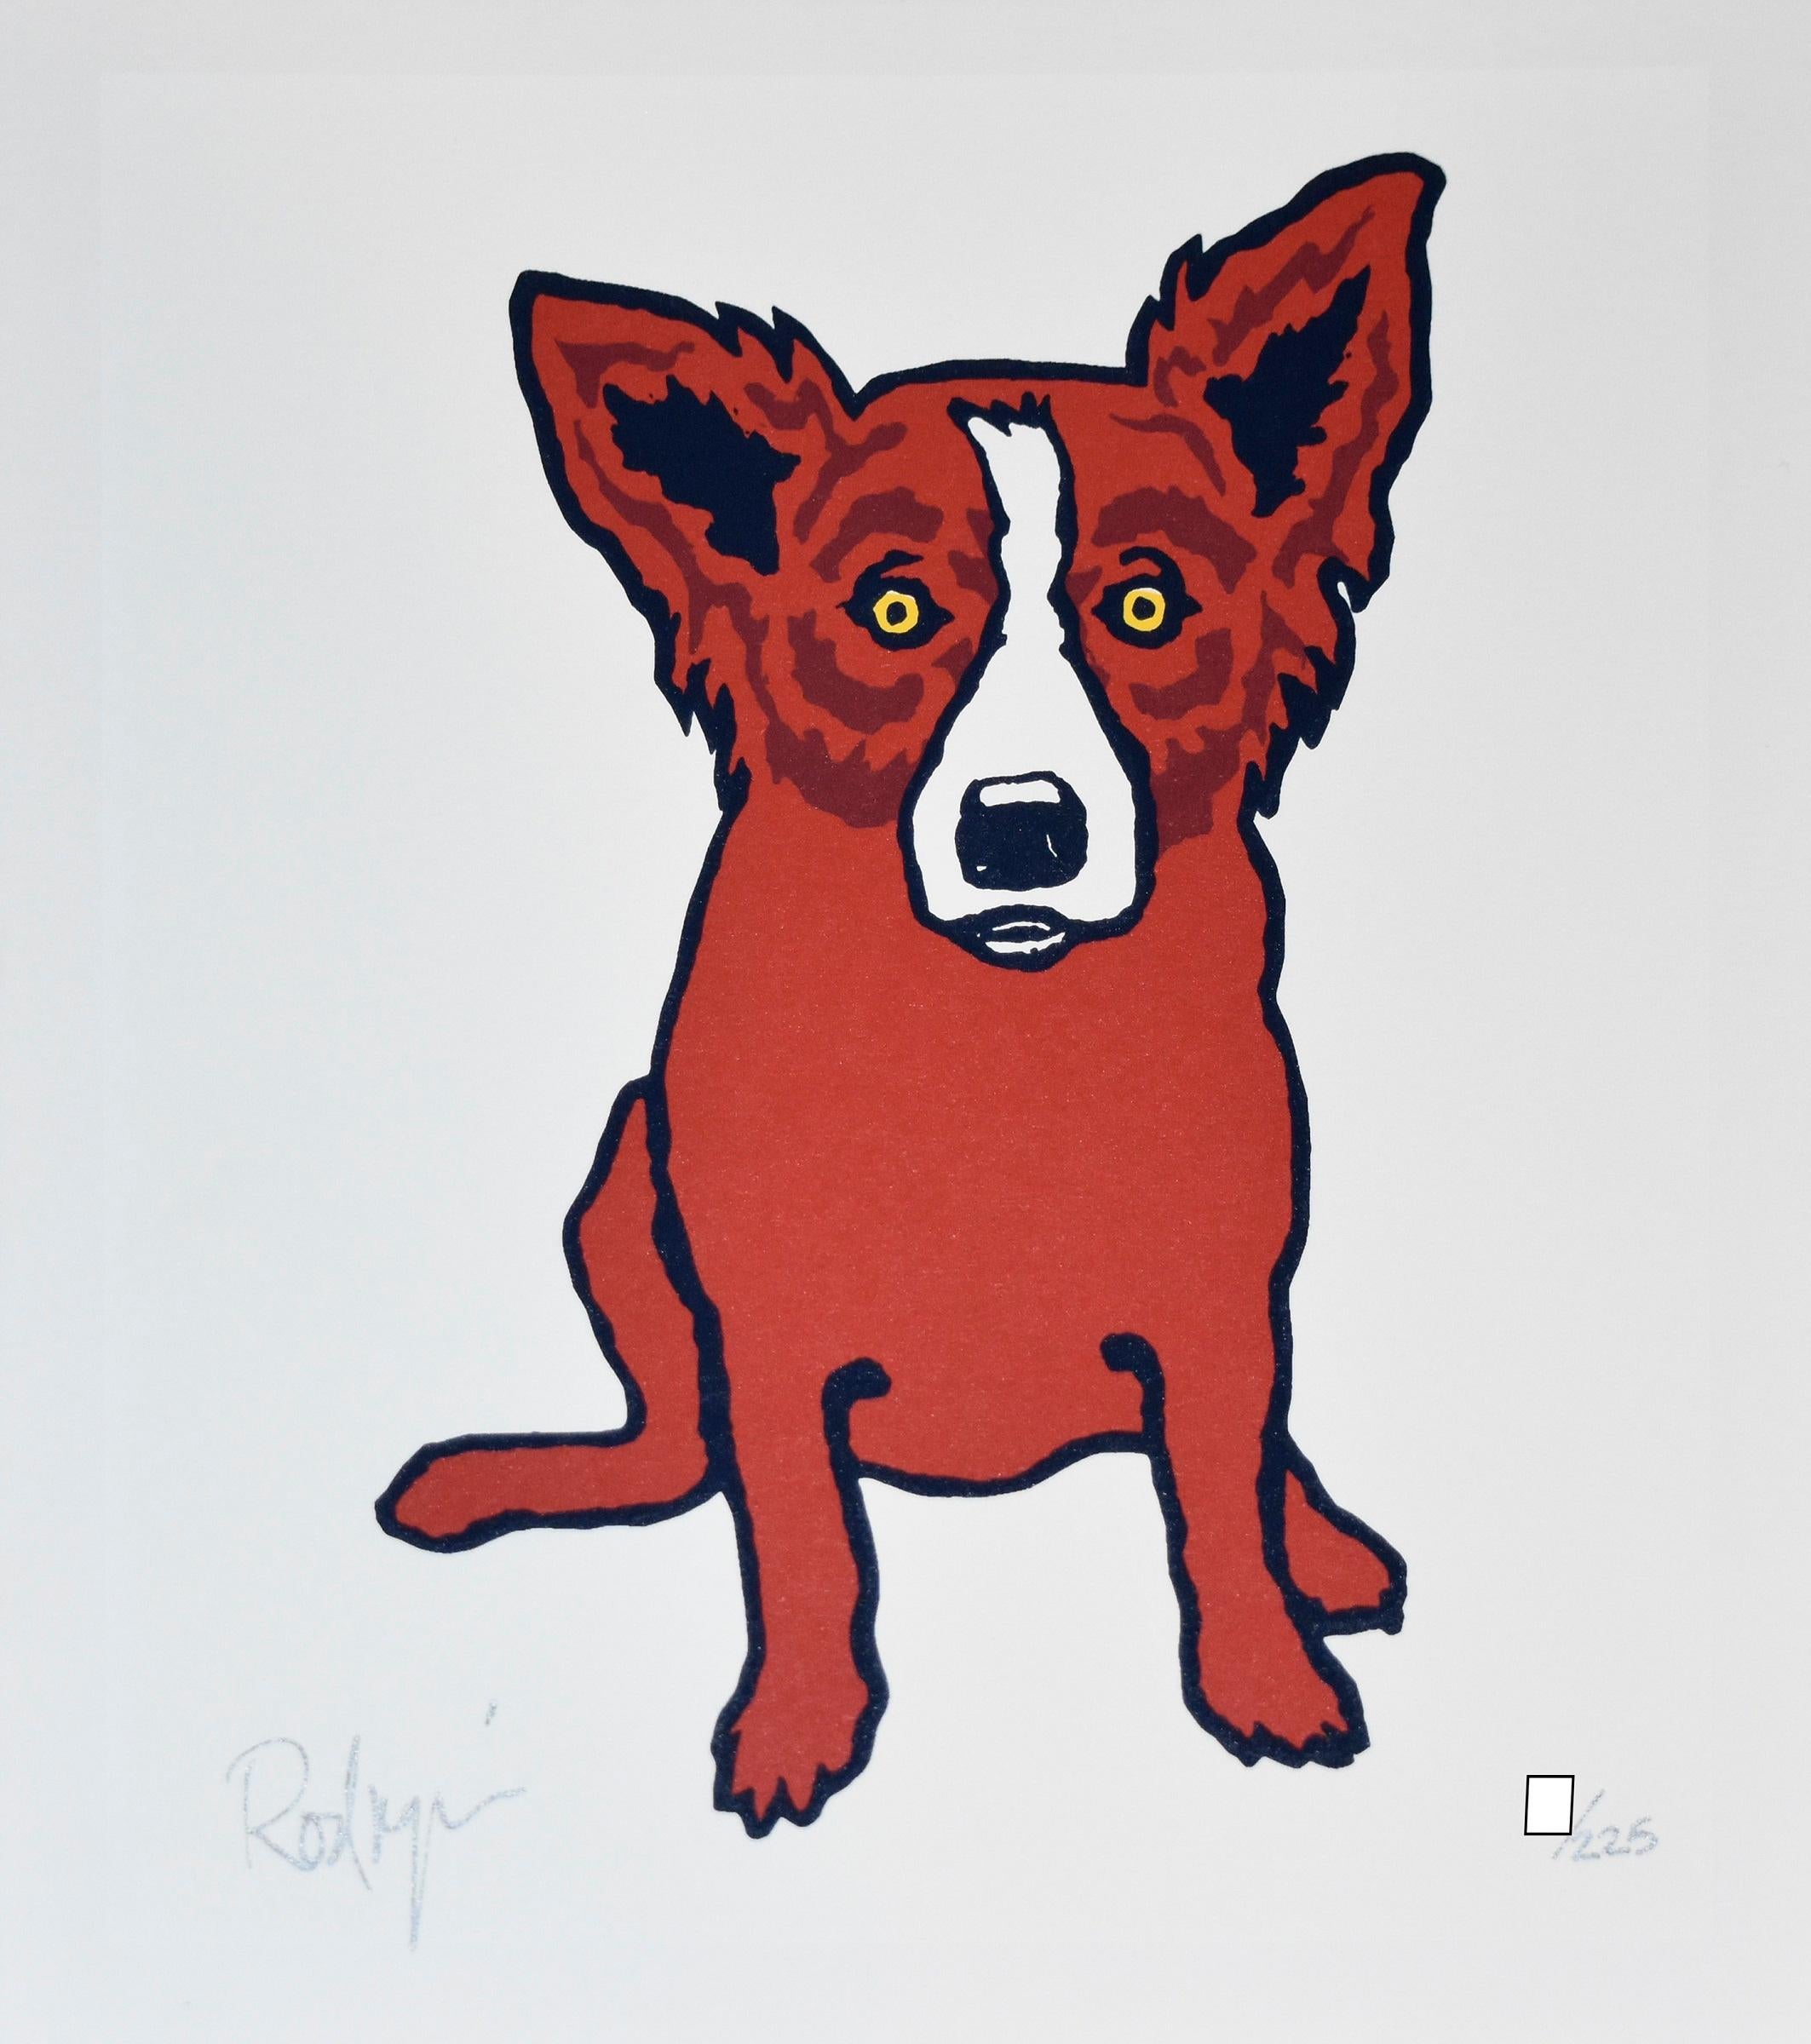 Cette œuvre intitulée Blue Dog se compose d'un chien rouge assis sur un fond blanc.  Le chien a des yeux jaunes pleins d'âme.  Cette sérigraphie originale pop art animalière sur papier est signée à la main par l'artiste.

Artiste :  George